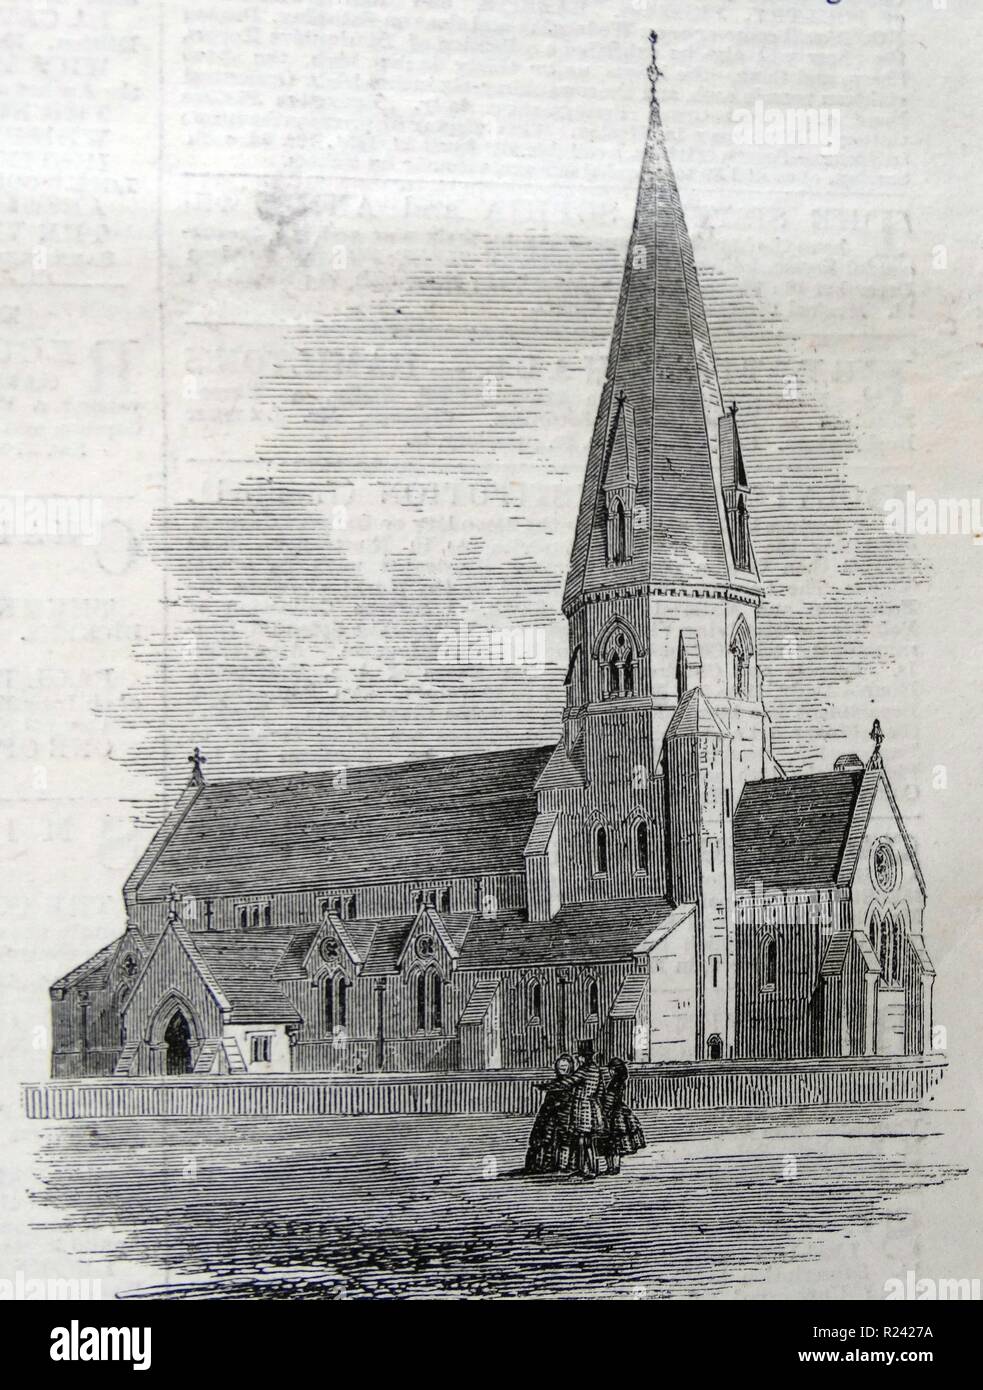 Gravur mit der Außenseite des St.-Michaels Kirche, Leafield, Oxfordshire. Vom 1860 Stockfoto